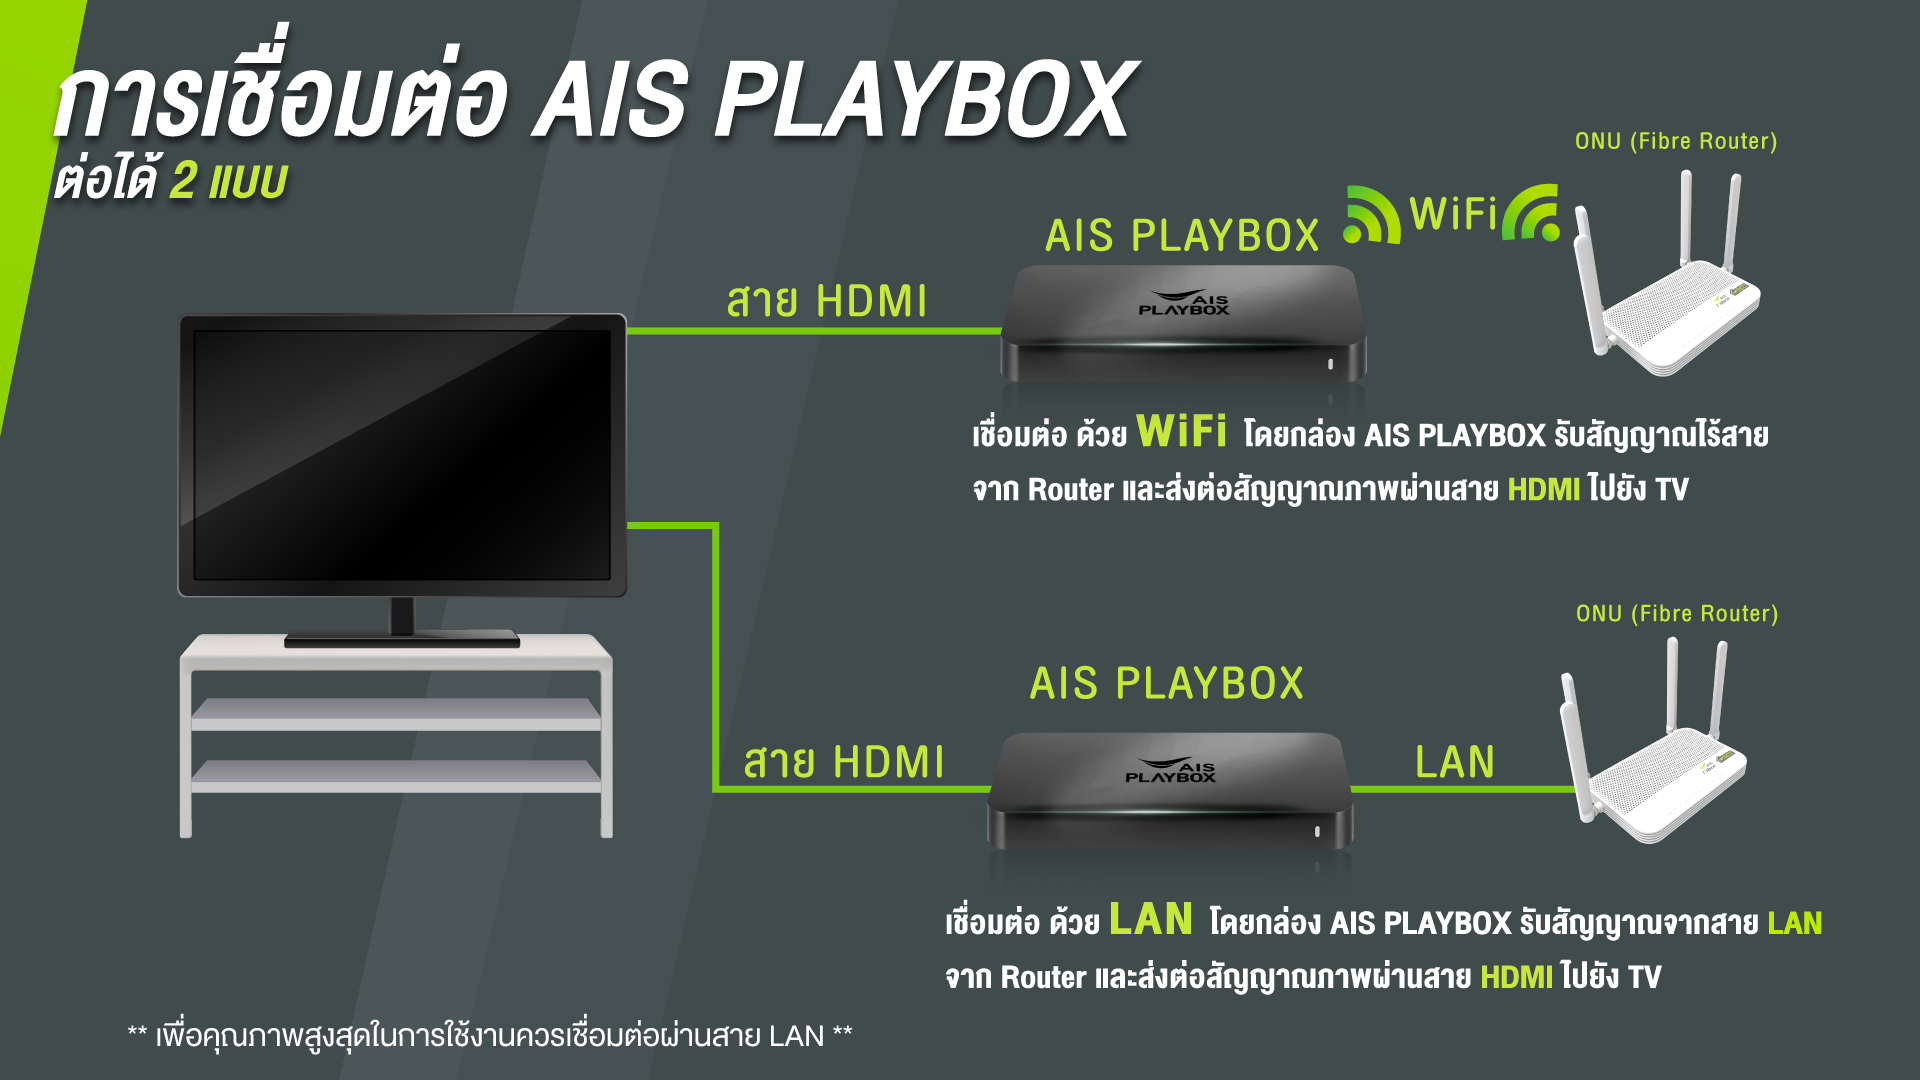 กล่อง AIS playbox ต่อ wifi ได้ไหม อ่านที่นี่: AIS playboxมีWiFiไหม